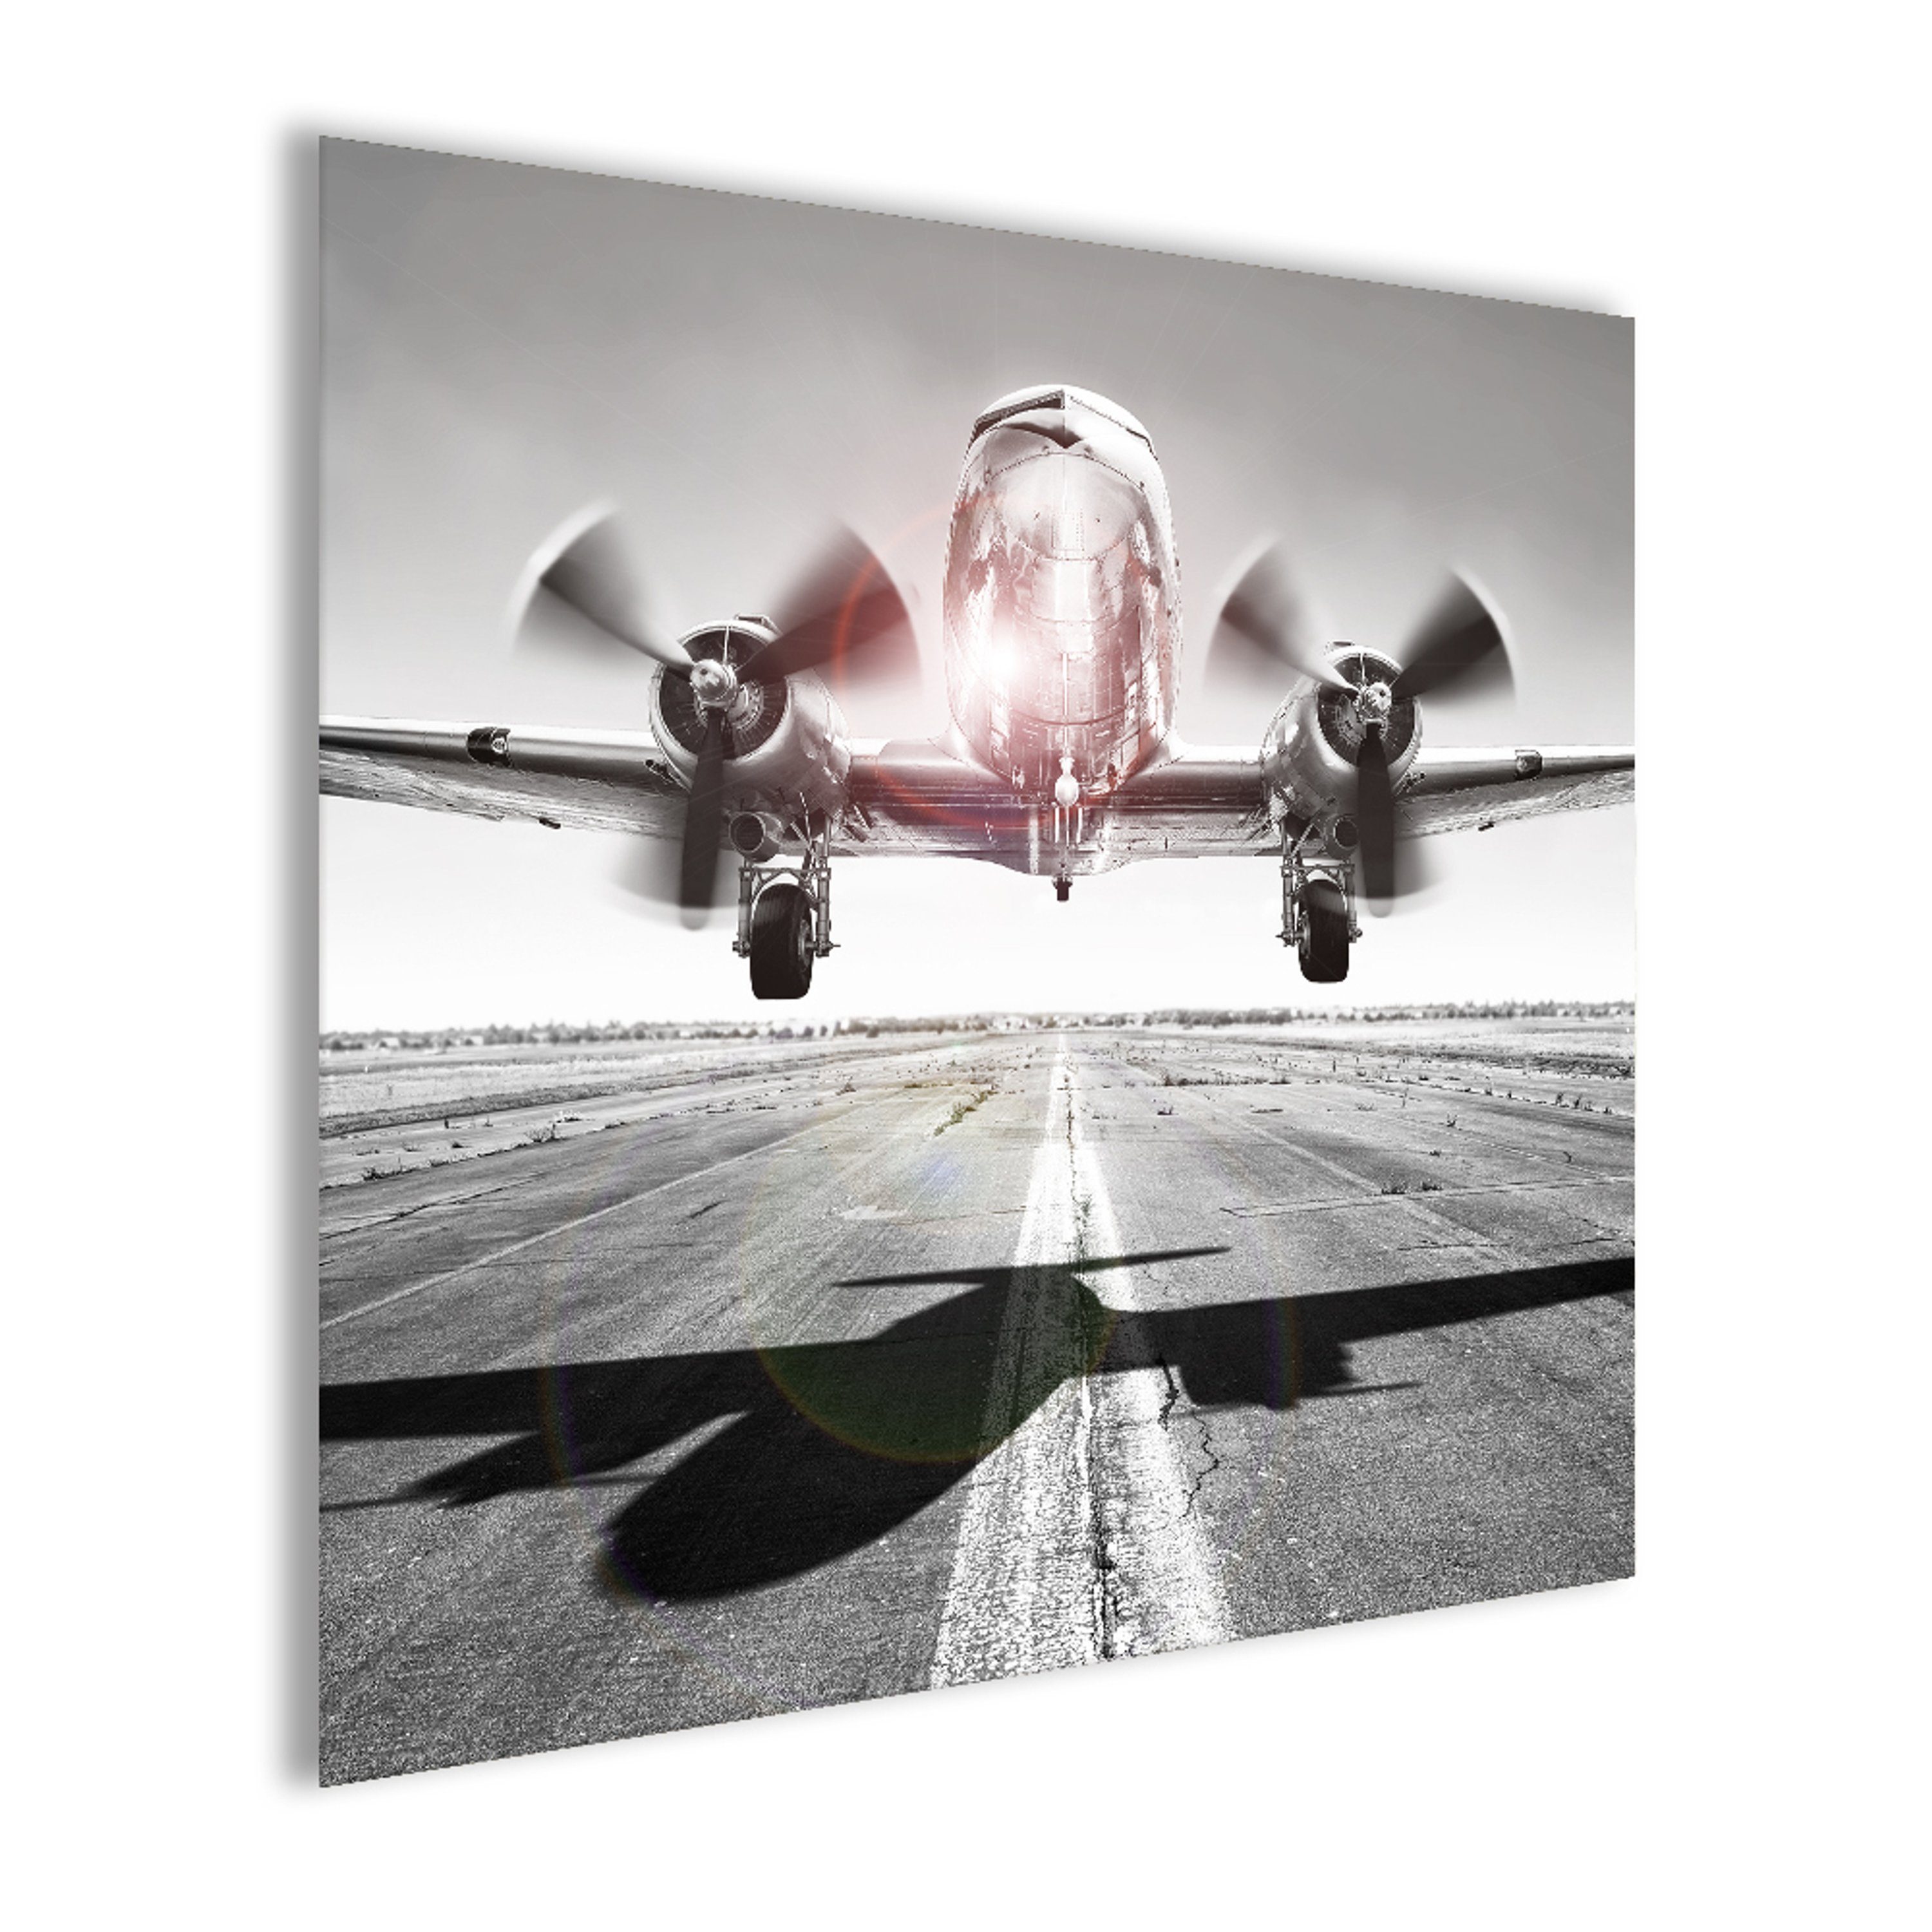 Foto: Flugzeug Flugzeug Glasbild 30x30cm schwarz- Glasbild schwarz-weiß weiß Foto Bild Vintage, artissimo